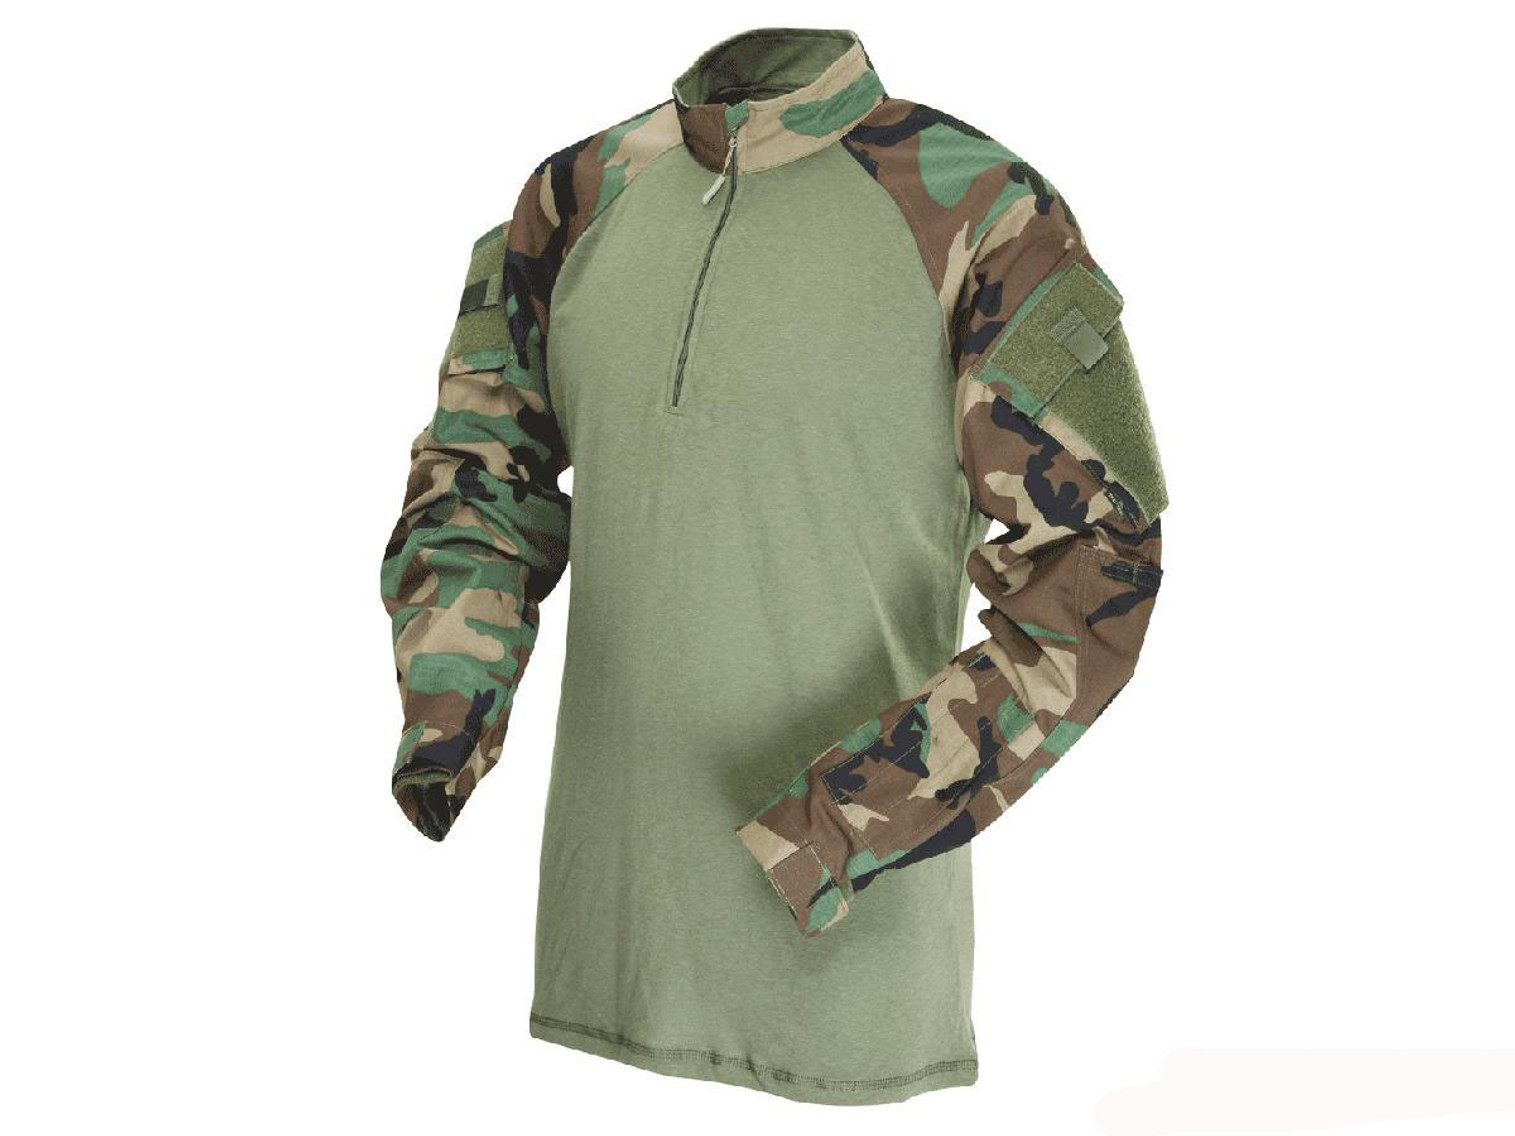 Tru-Spec Tactical Response Uniform 1/4 Zip Combat Shirt - Woodland (Size: Medium)